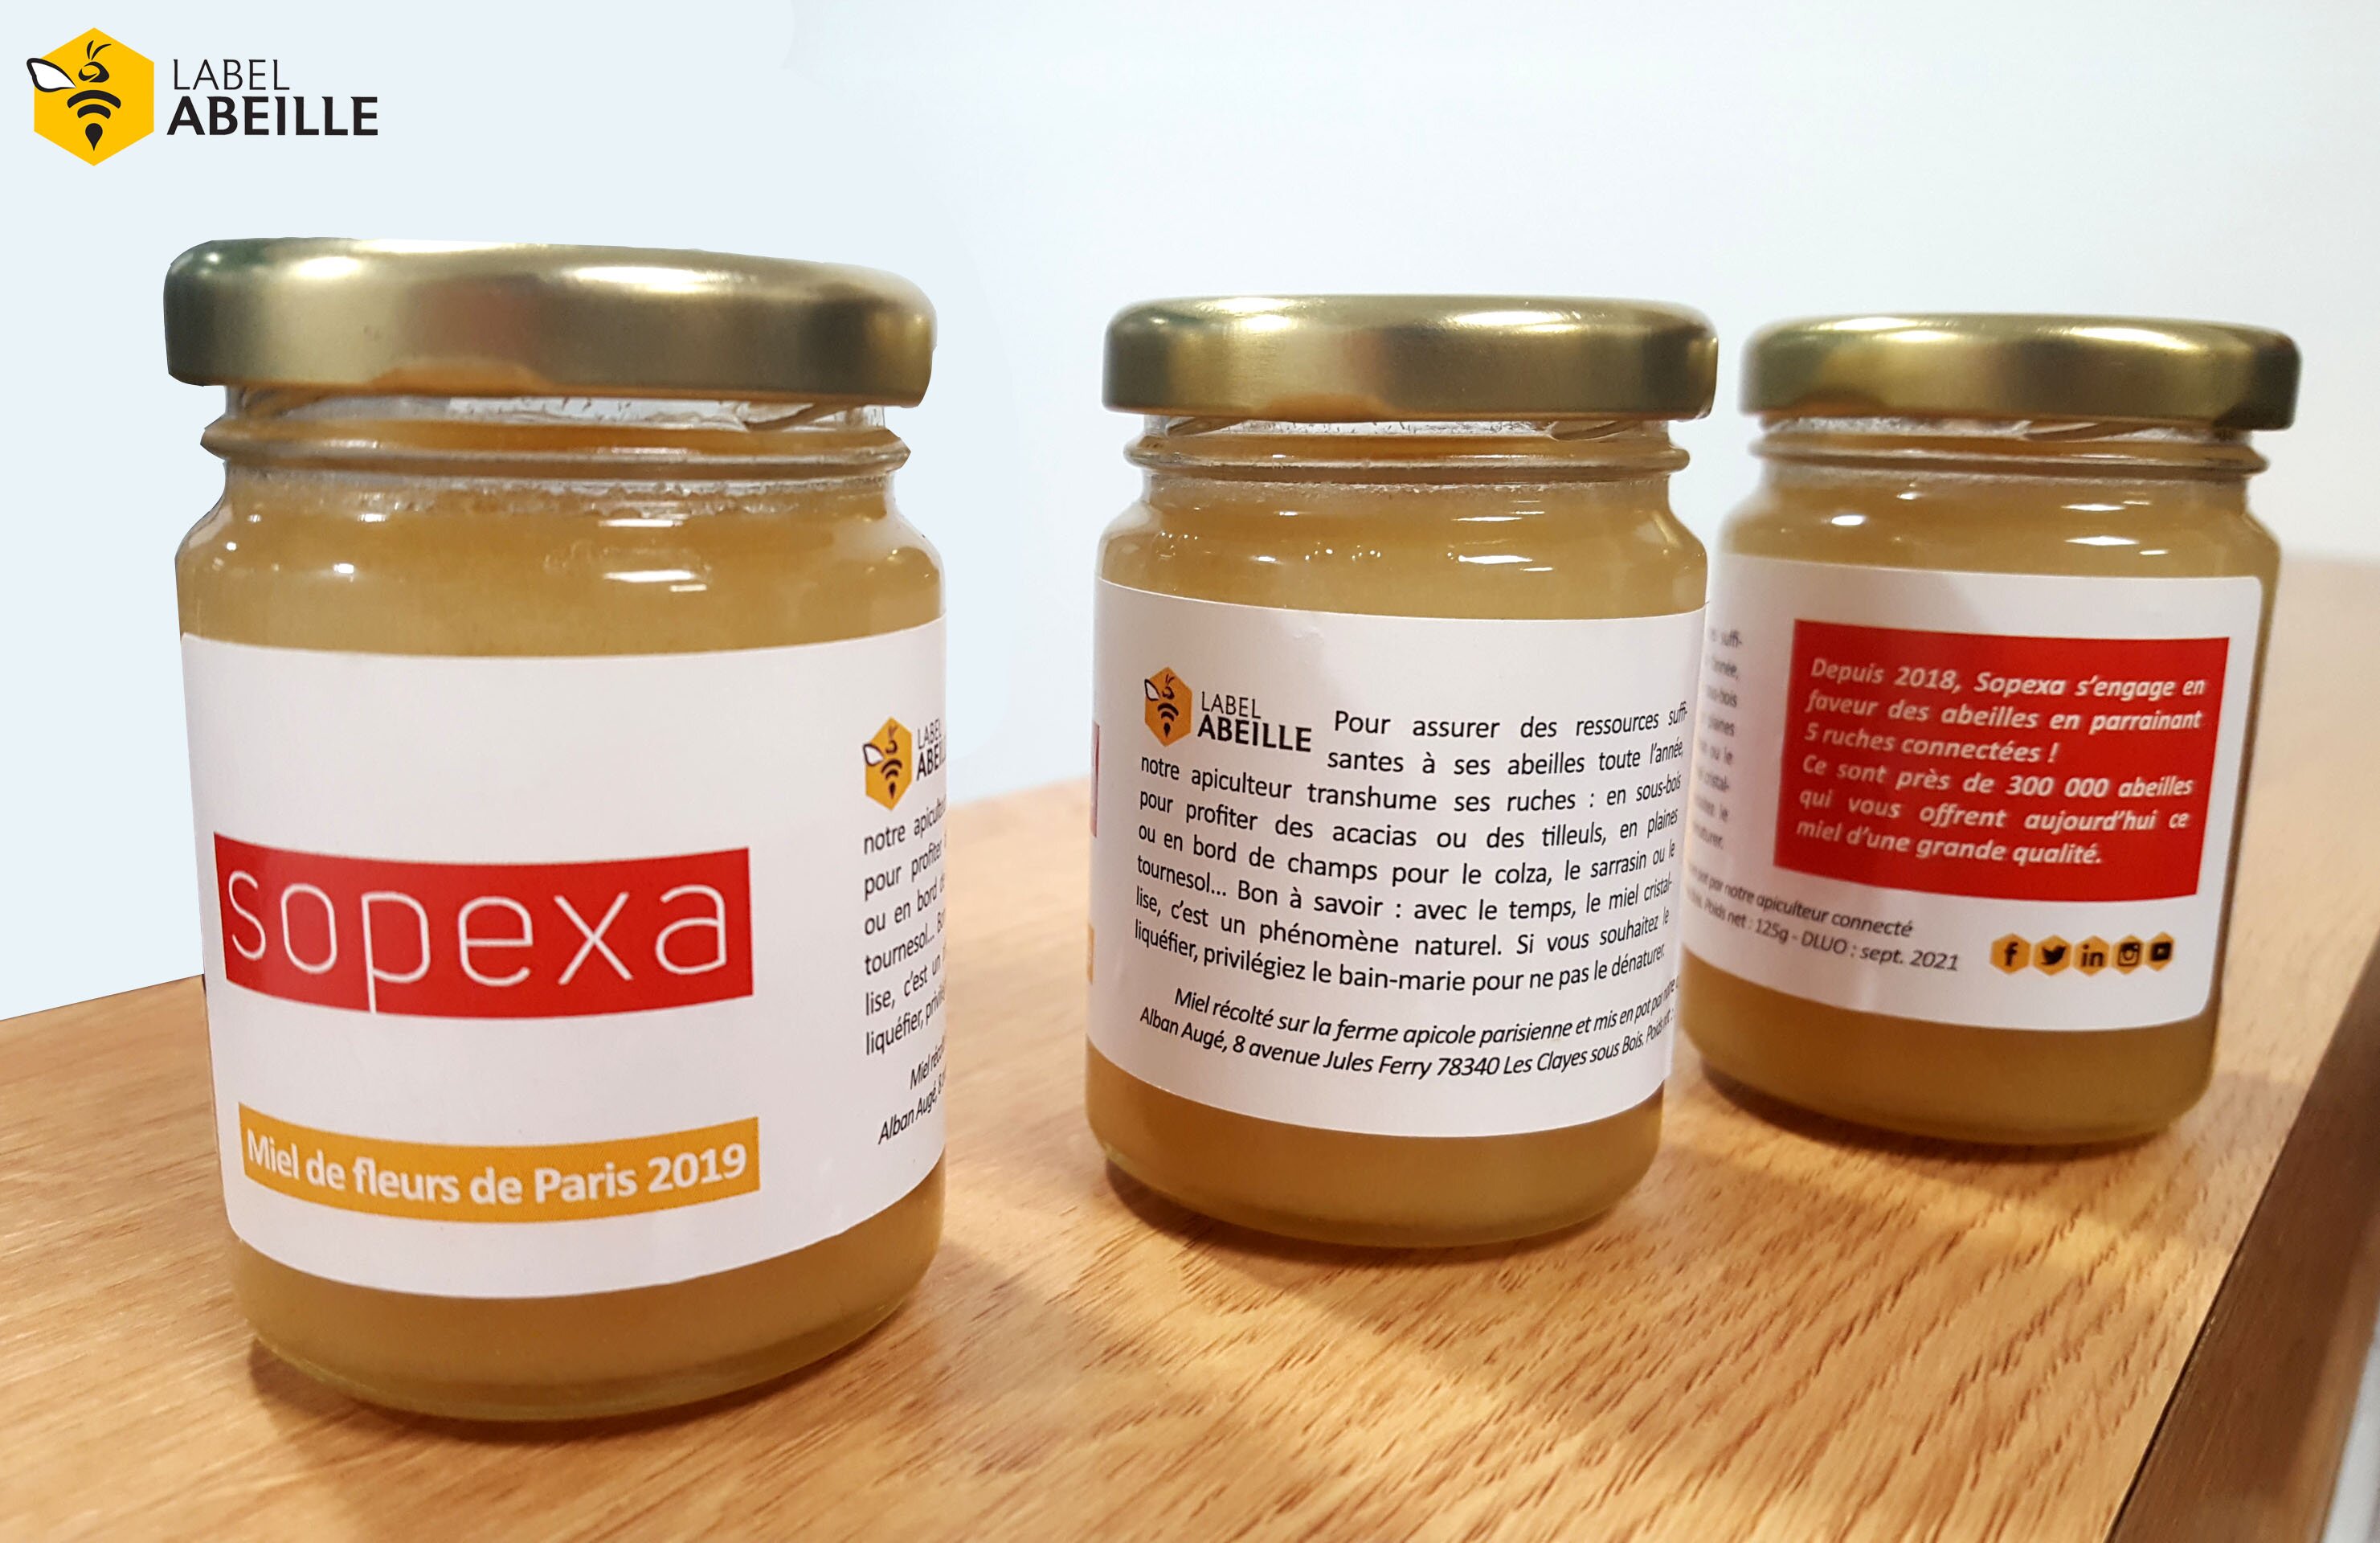 LABEL ABEILLE - récolte 2019 miel connecté de Sopexa